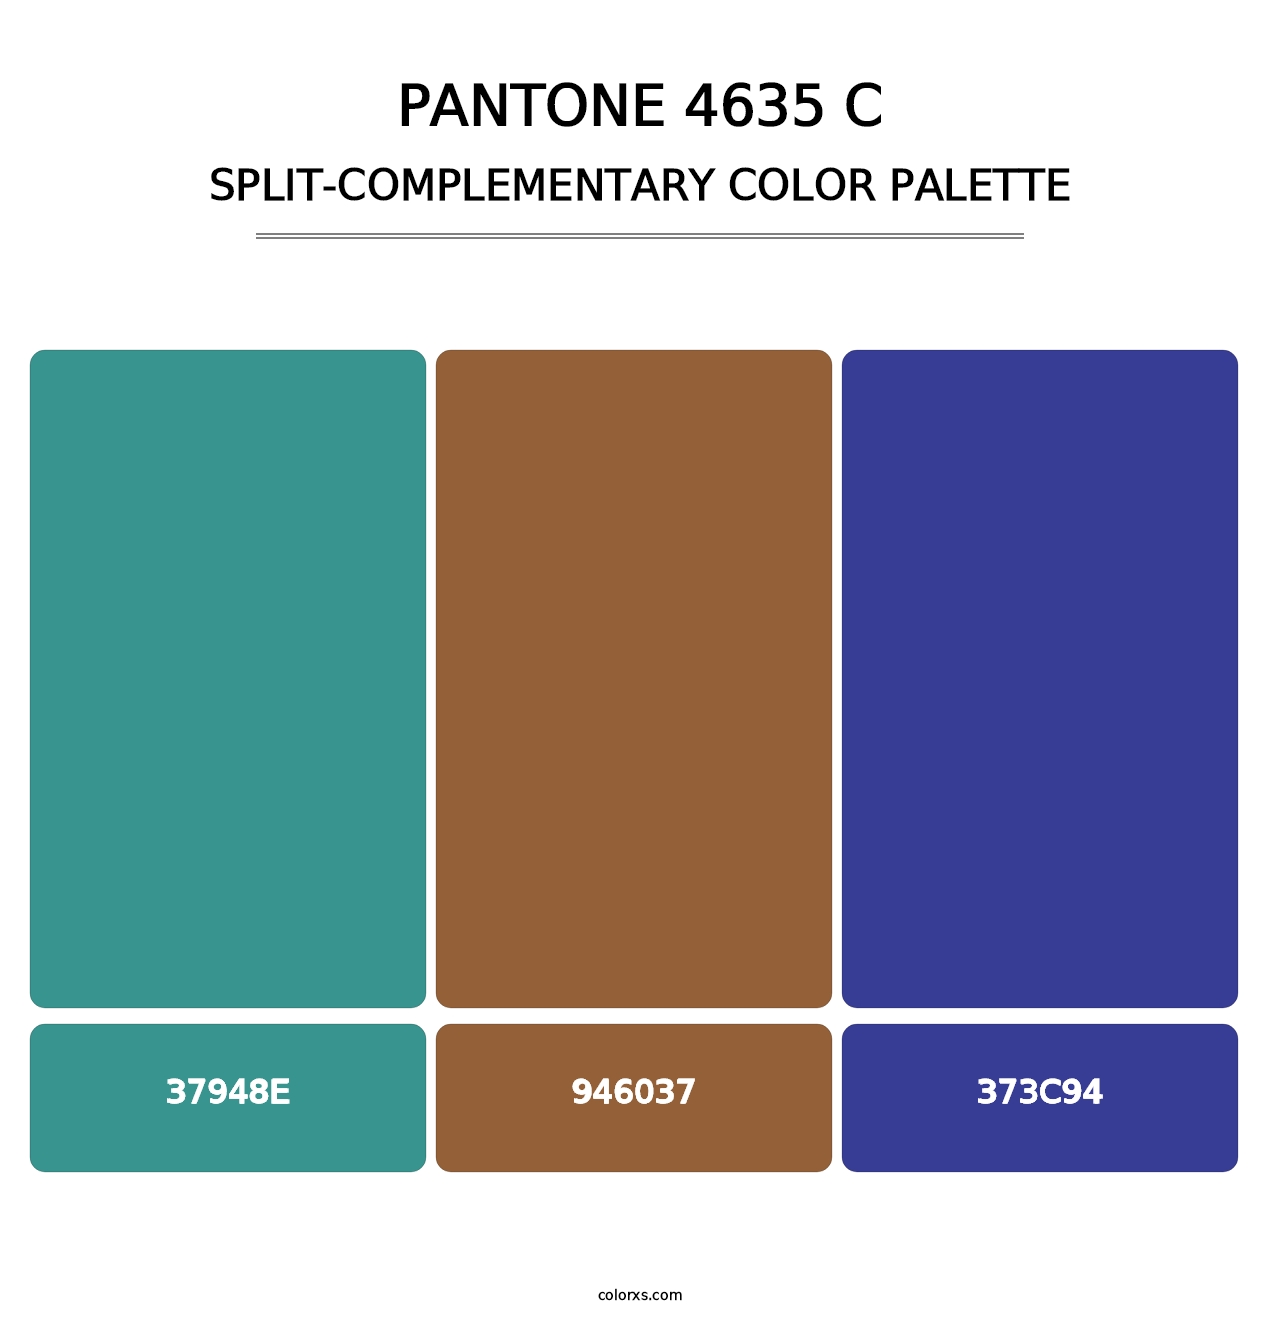 PANTONE 4635 C - Split-Complementary Color Palette